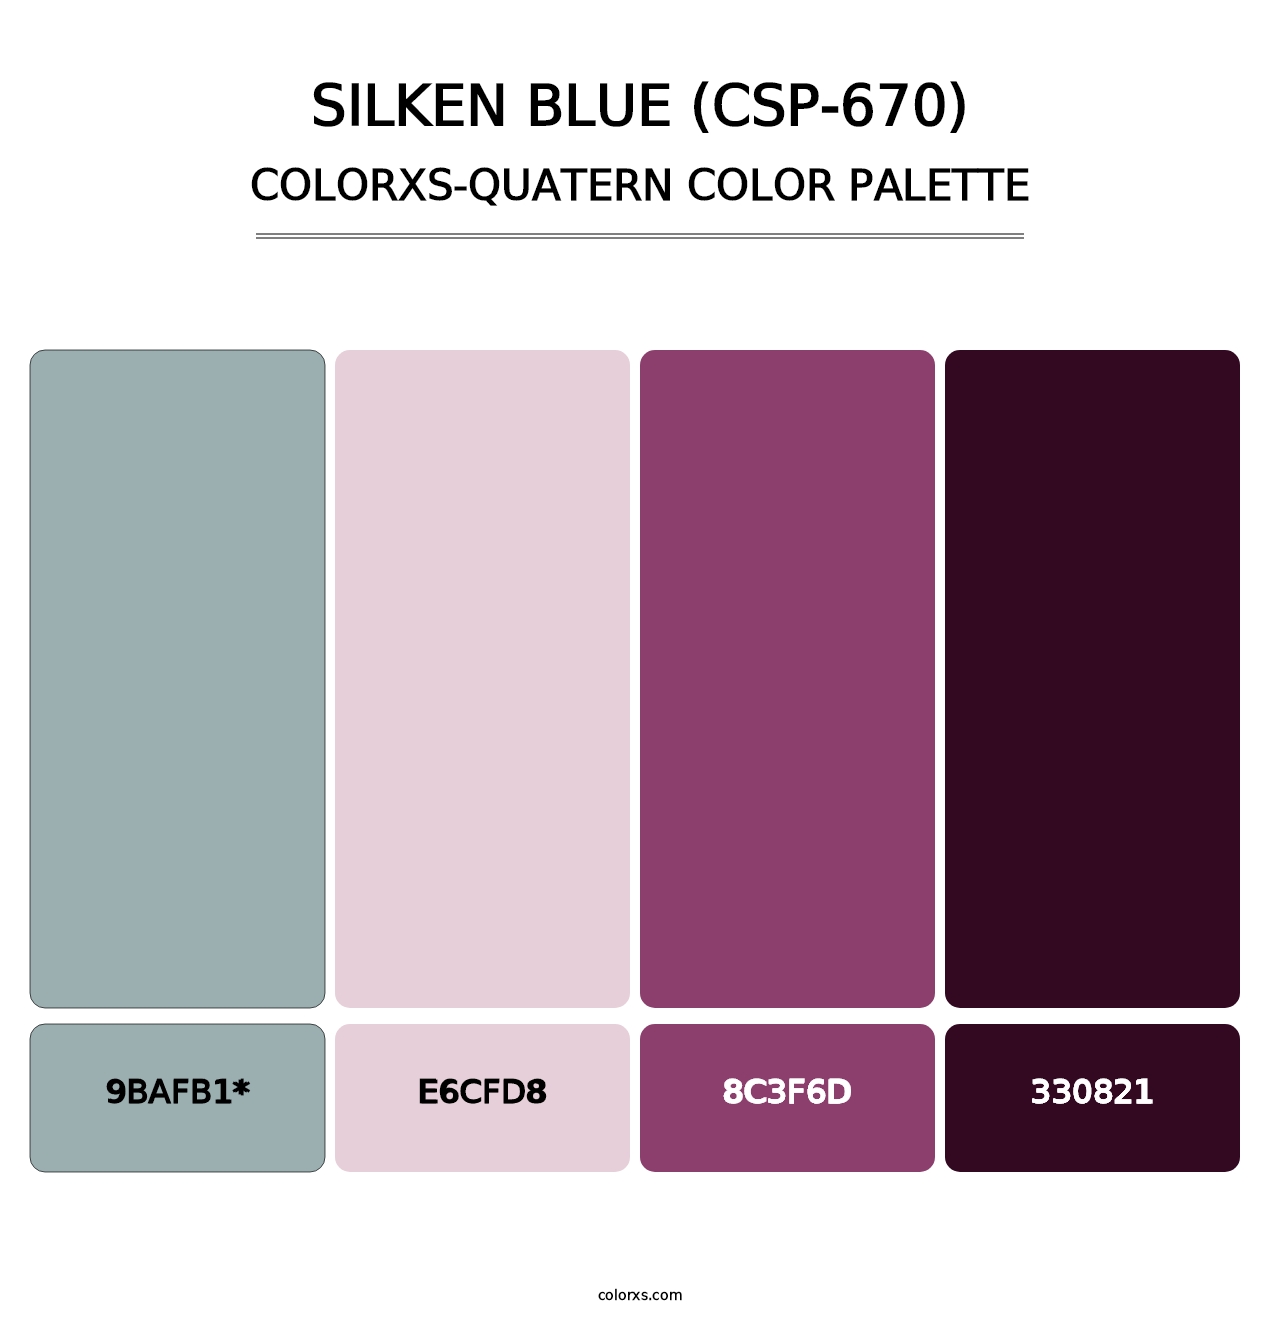 Silken Blue (CSP-670) - Colorxs Quad Palette